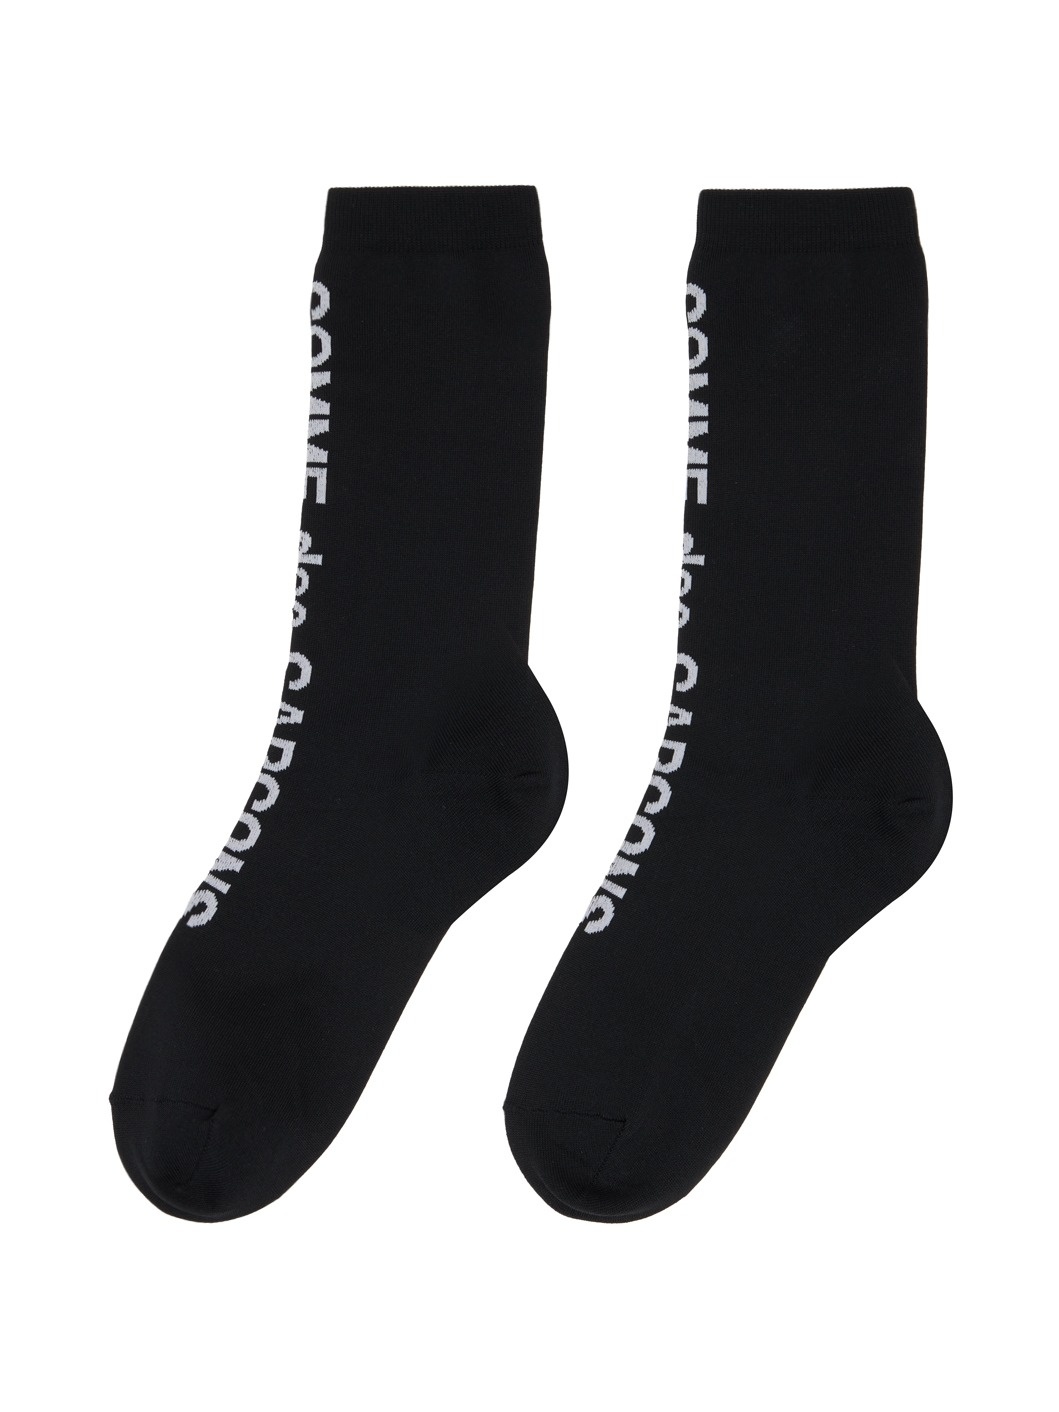 Black Ribbed Socks - 2